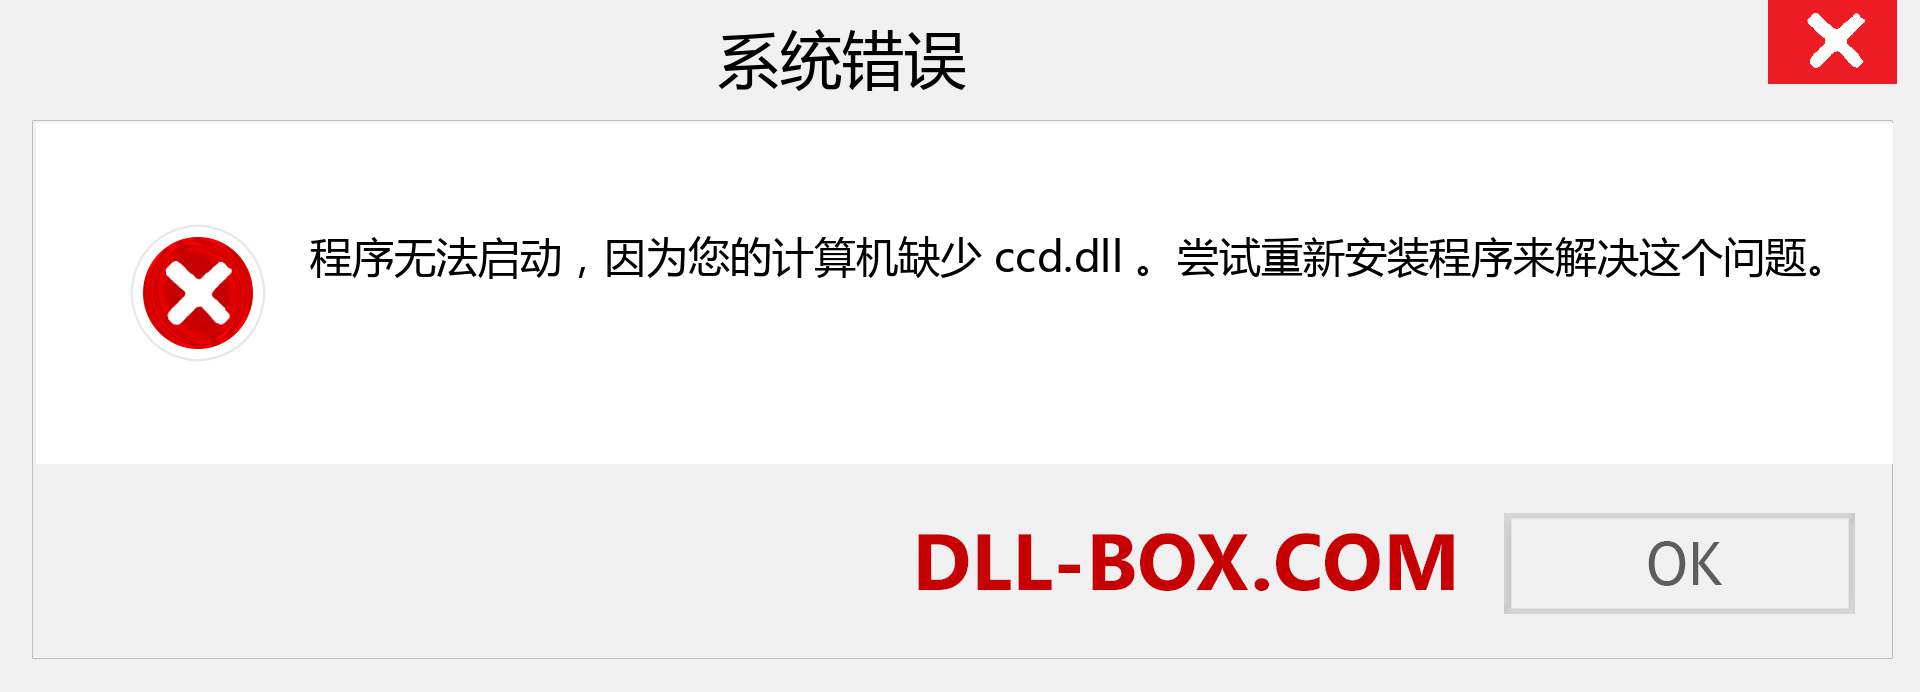 ccd.dll 文件丢失？。 适用于 Windows 7、8、10 的下载 - 修复 Windows、照片、图像上的 ccd dll 丢失错误